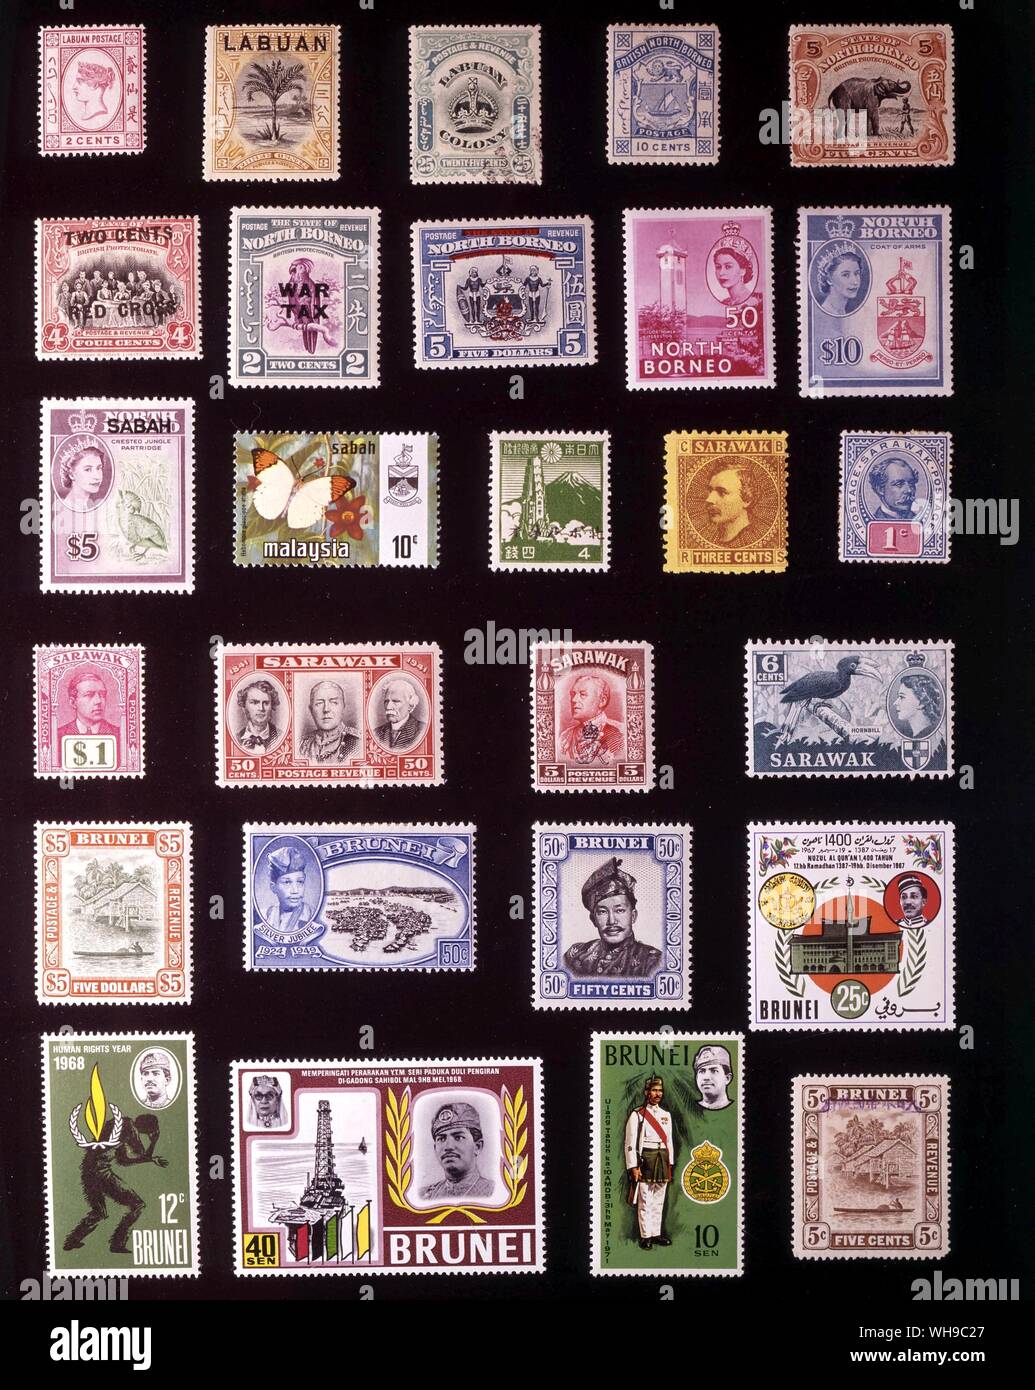 Asien - BRITISH BORNEO: (von links nach rechts) 1. Labuan, 2 Cents, 1885, 2. Labuan, 3 Cent 1897, 3. Labuan, 25 Cent, 1902, 4. British North Borneo, 10 Cent, 1886, 5. Zustand von North Borneo, 5 Cent, 1909, 6. North Borneo, 4 + 2 Cent 1918, 7. North Borneo, 2 Cents 1941, 8. North Borneo, 5 Dollars, 1947, 9. North Borneo, 50 Cent, 1954, 10. North Borneo, 10 Dollars, 1961, 11. Sabah, 5 Dollars, 1964, 12. Sabah, 10 Cent, 1971, 13. Japanische Besetzung von North Borneo, 4 Sen, 1945, 14. Sarawak, 3 Cent 1871, 15. Sarawak, 1 Cent, 1901, 16. Sarawak, 1 Dollar 1918, 17. Sarawak, 50 Cent, 1946, 18. Stockfoto